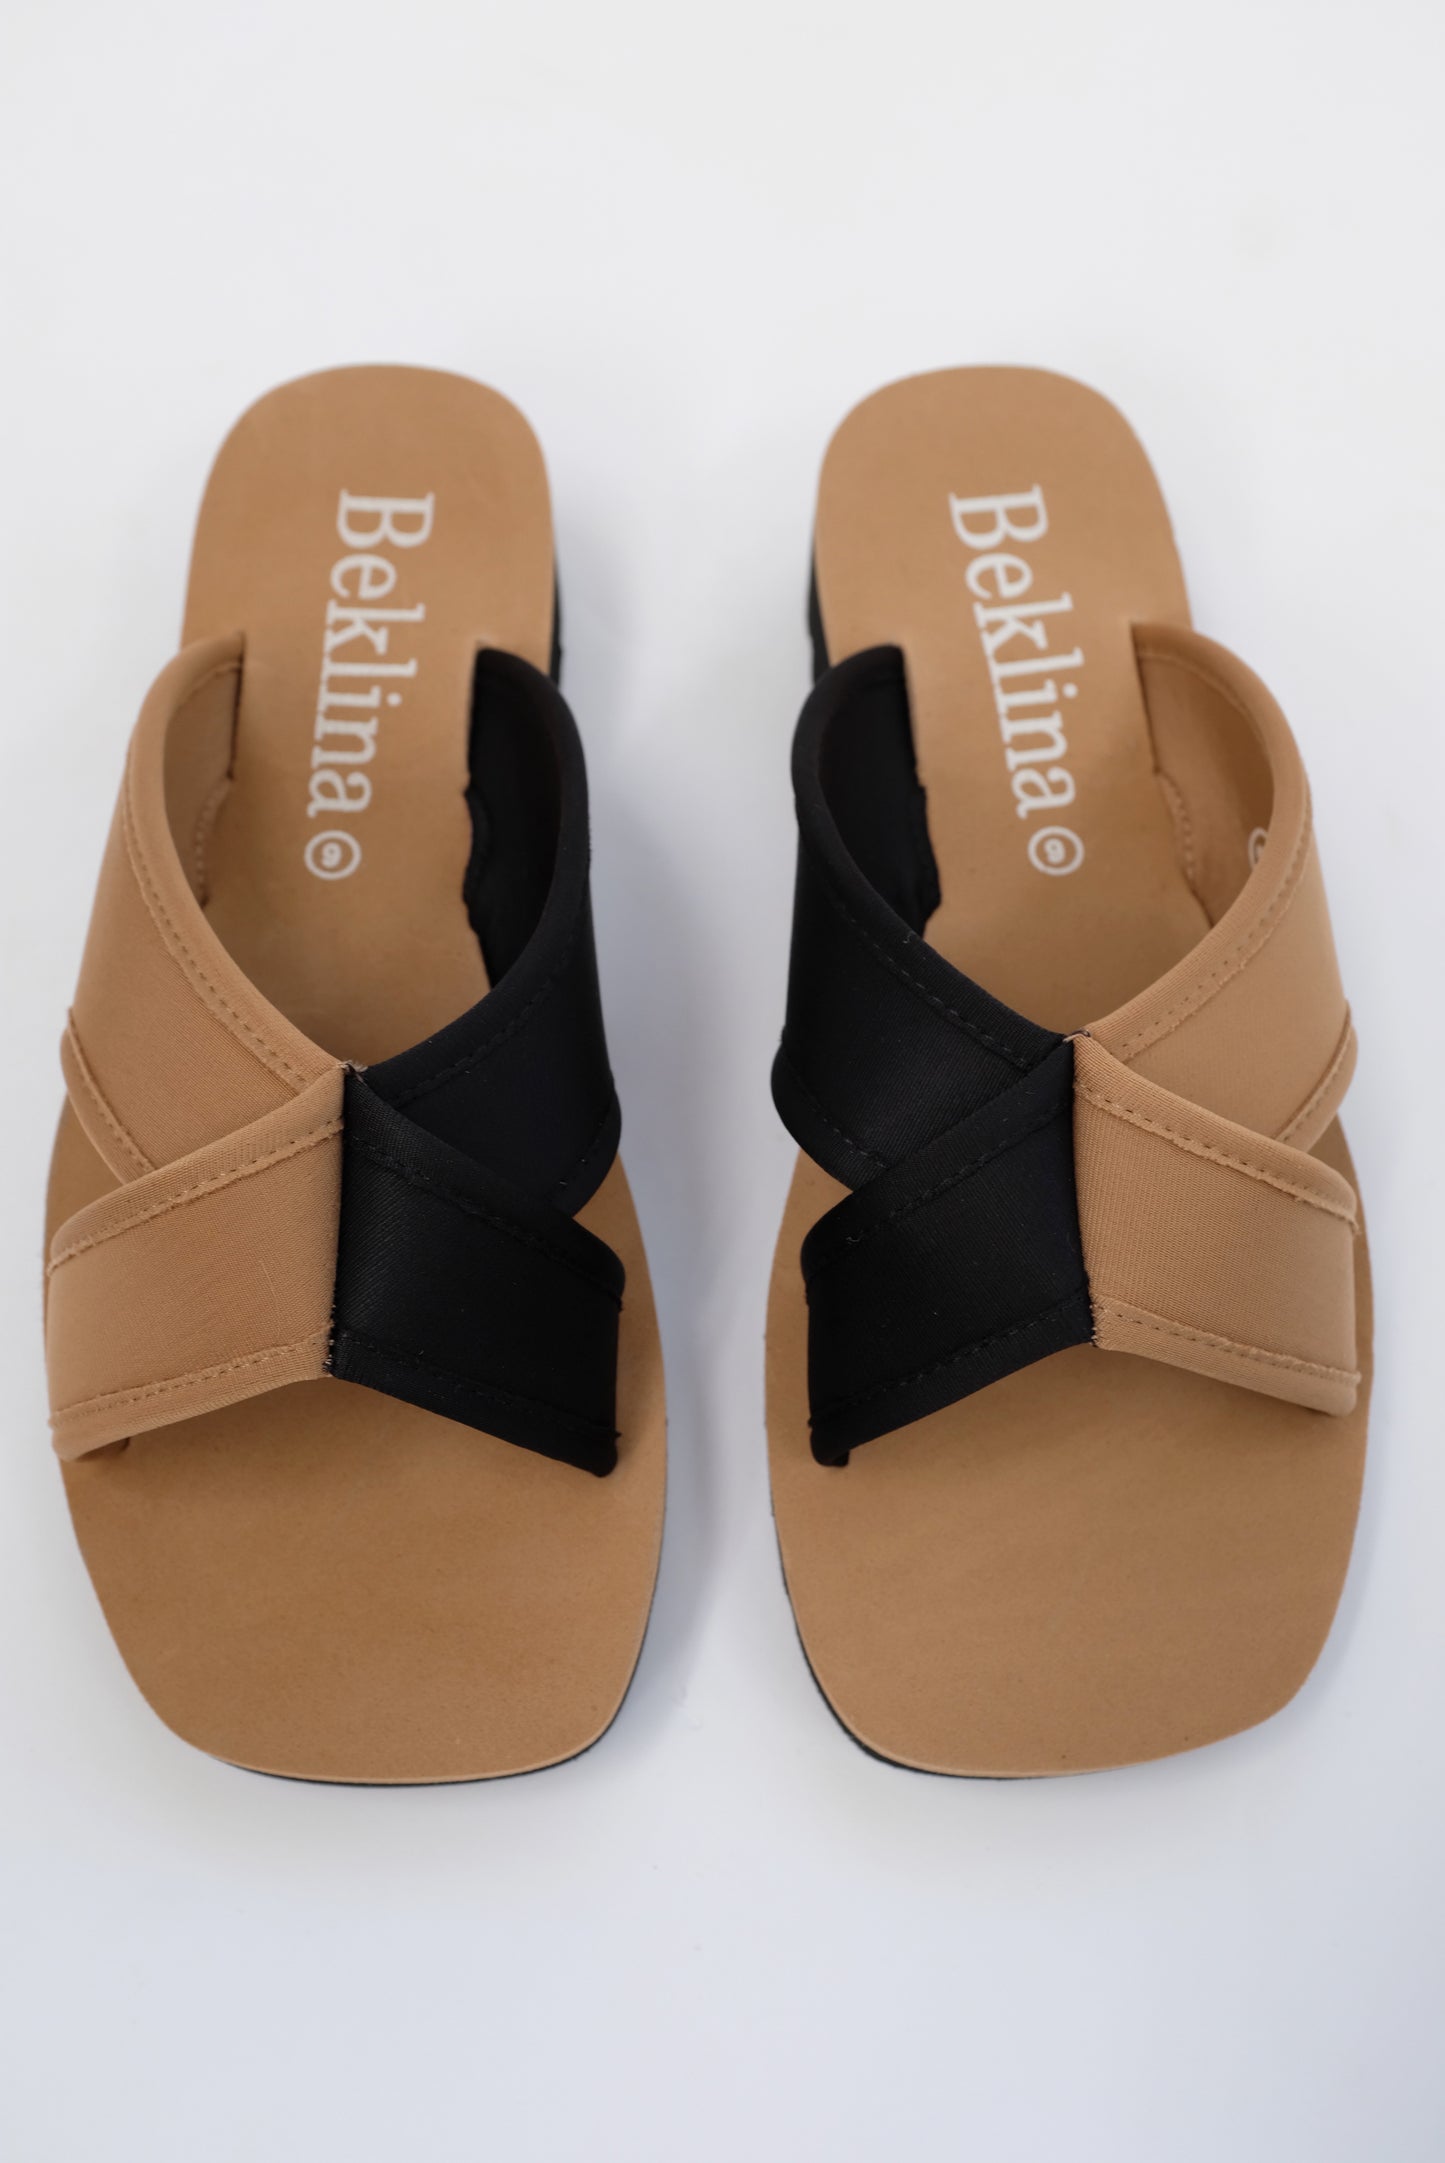 Beklina Water Sandal Slide Black/Sand